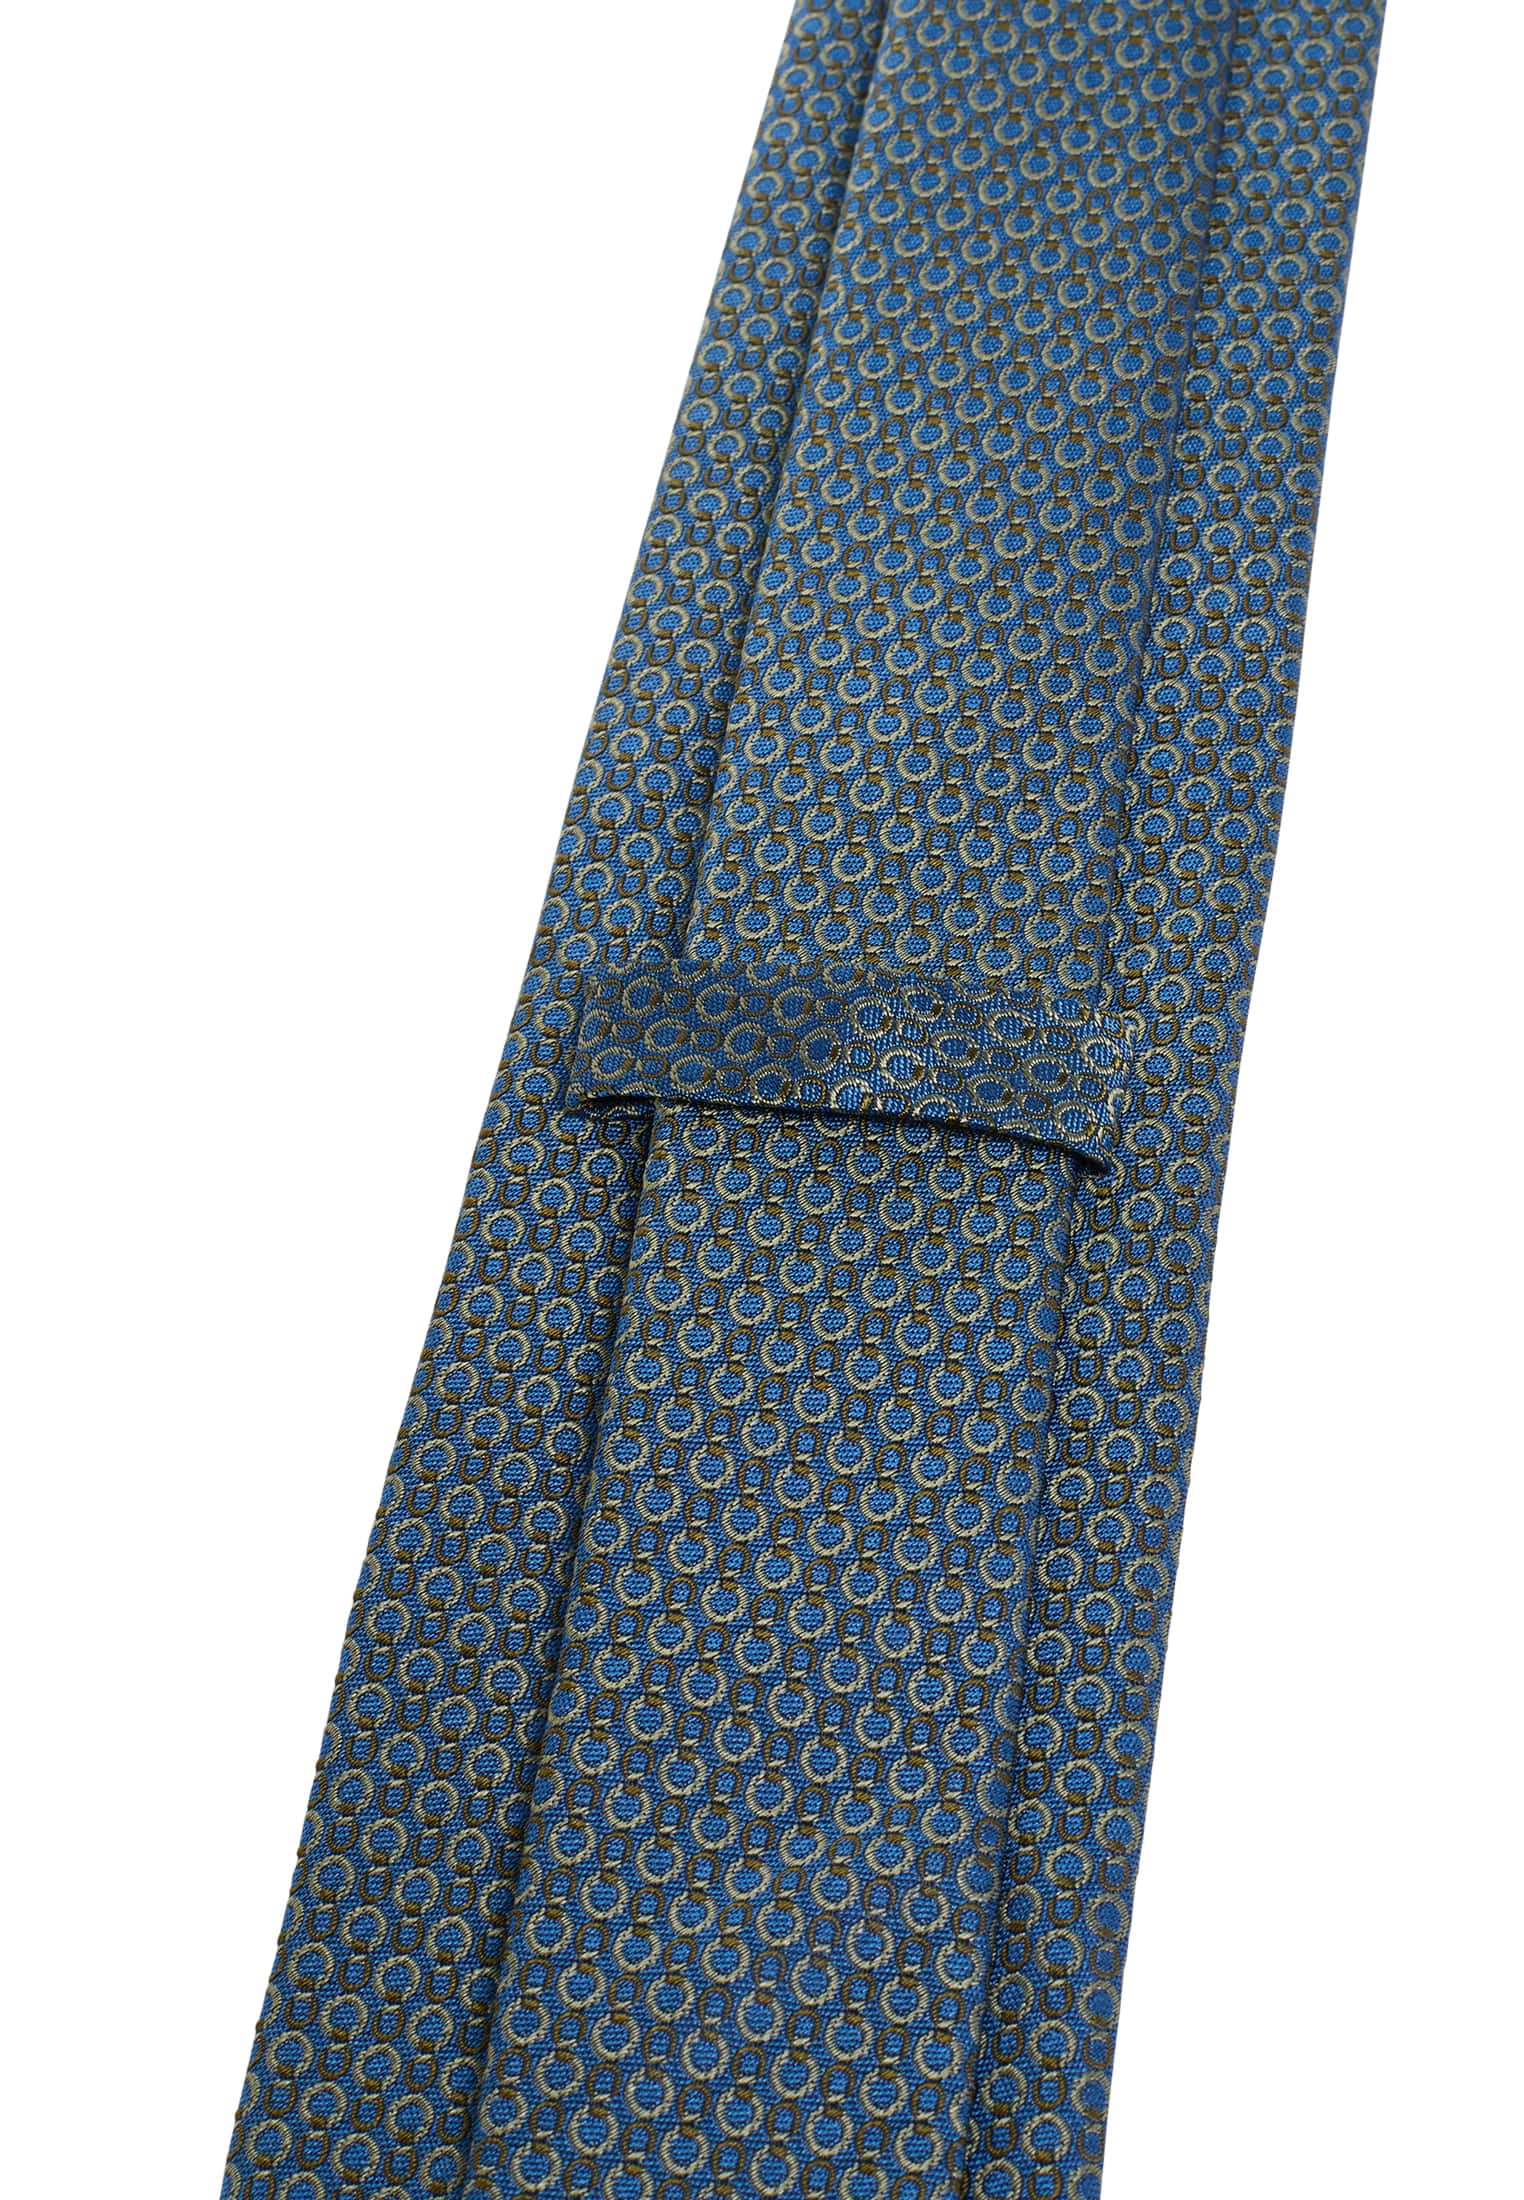 Krawatte in blau/grün strukturiert | blau/grün | 142 | 1AC01945-81-48-142 | Breite Krawatten